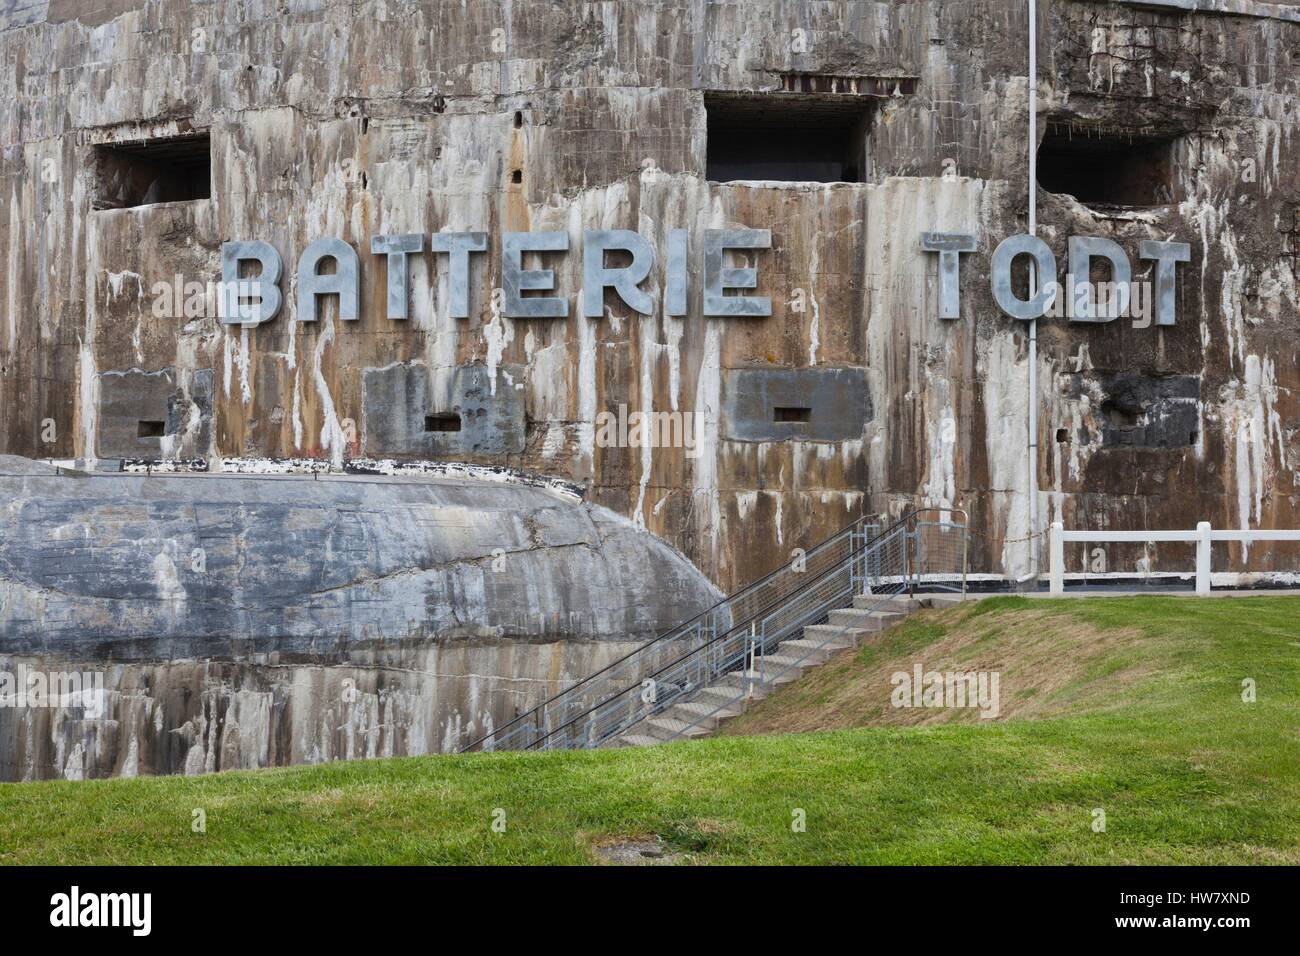 France, Pas de Calais, Cote d-Opale Area, Audinghen, Cap Gris Nez cape, Musee du Mur de Atlantique, Batterie Todt, World War Two German bunker museum, exterior Stock Photo